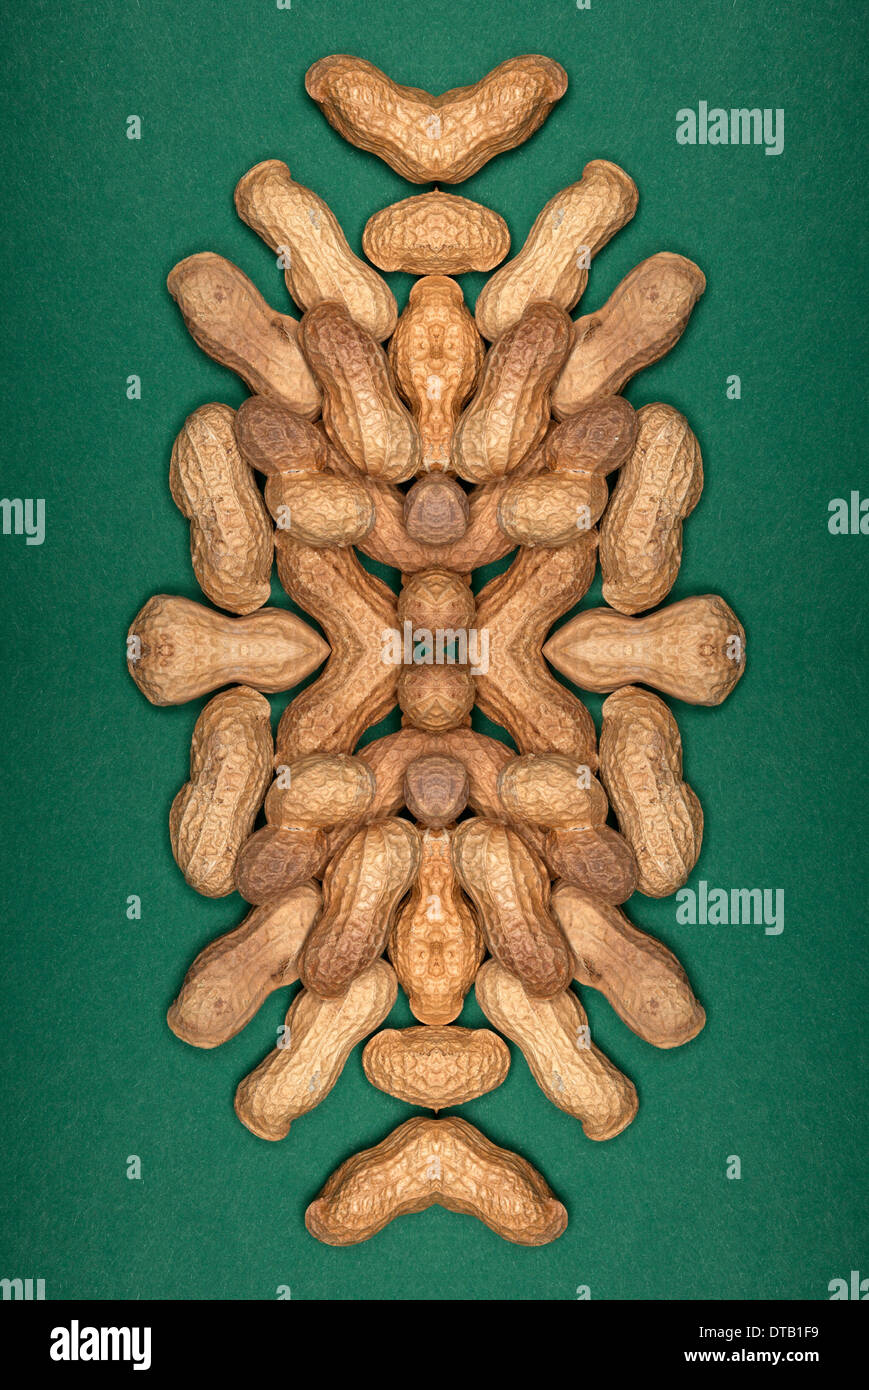 Un composite numérique d'images en miroir d'un arrangement d'arachides Banque D'Images